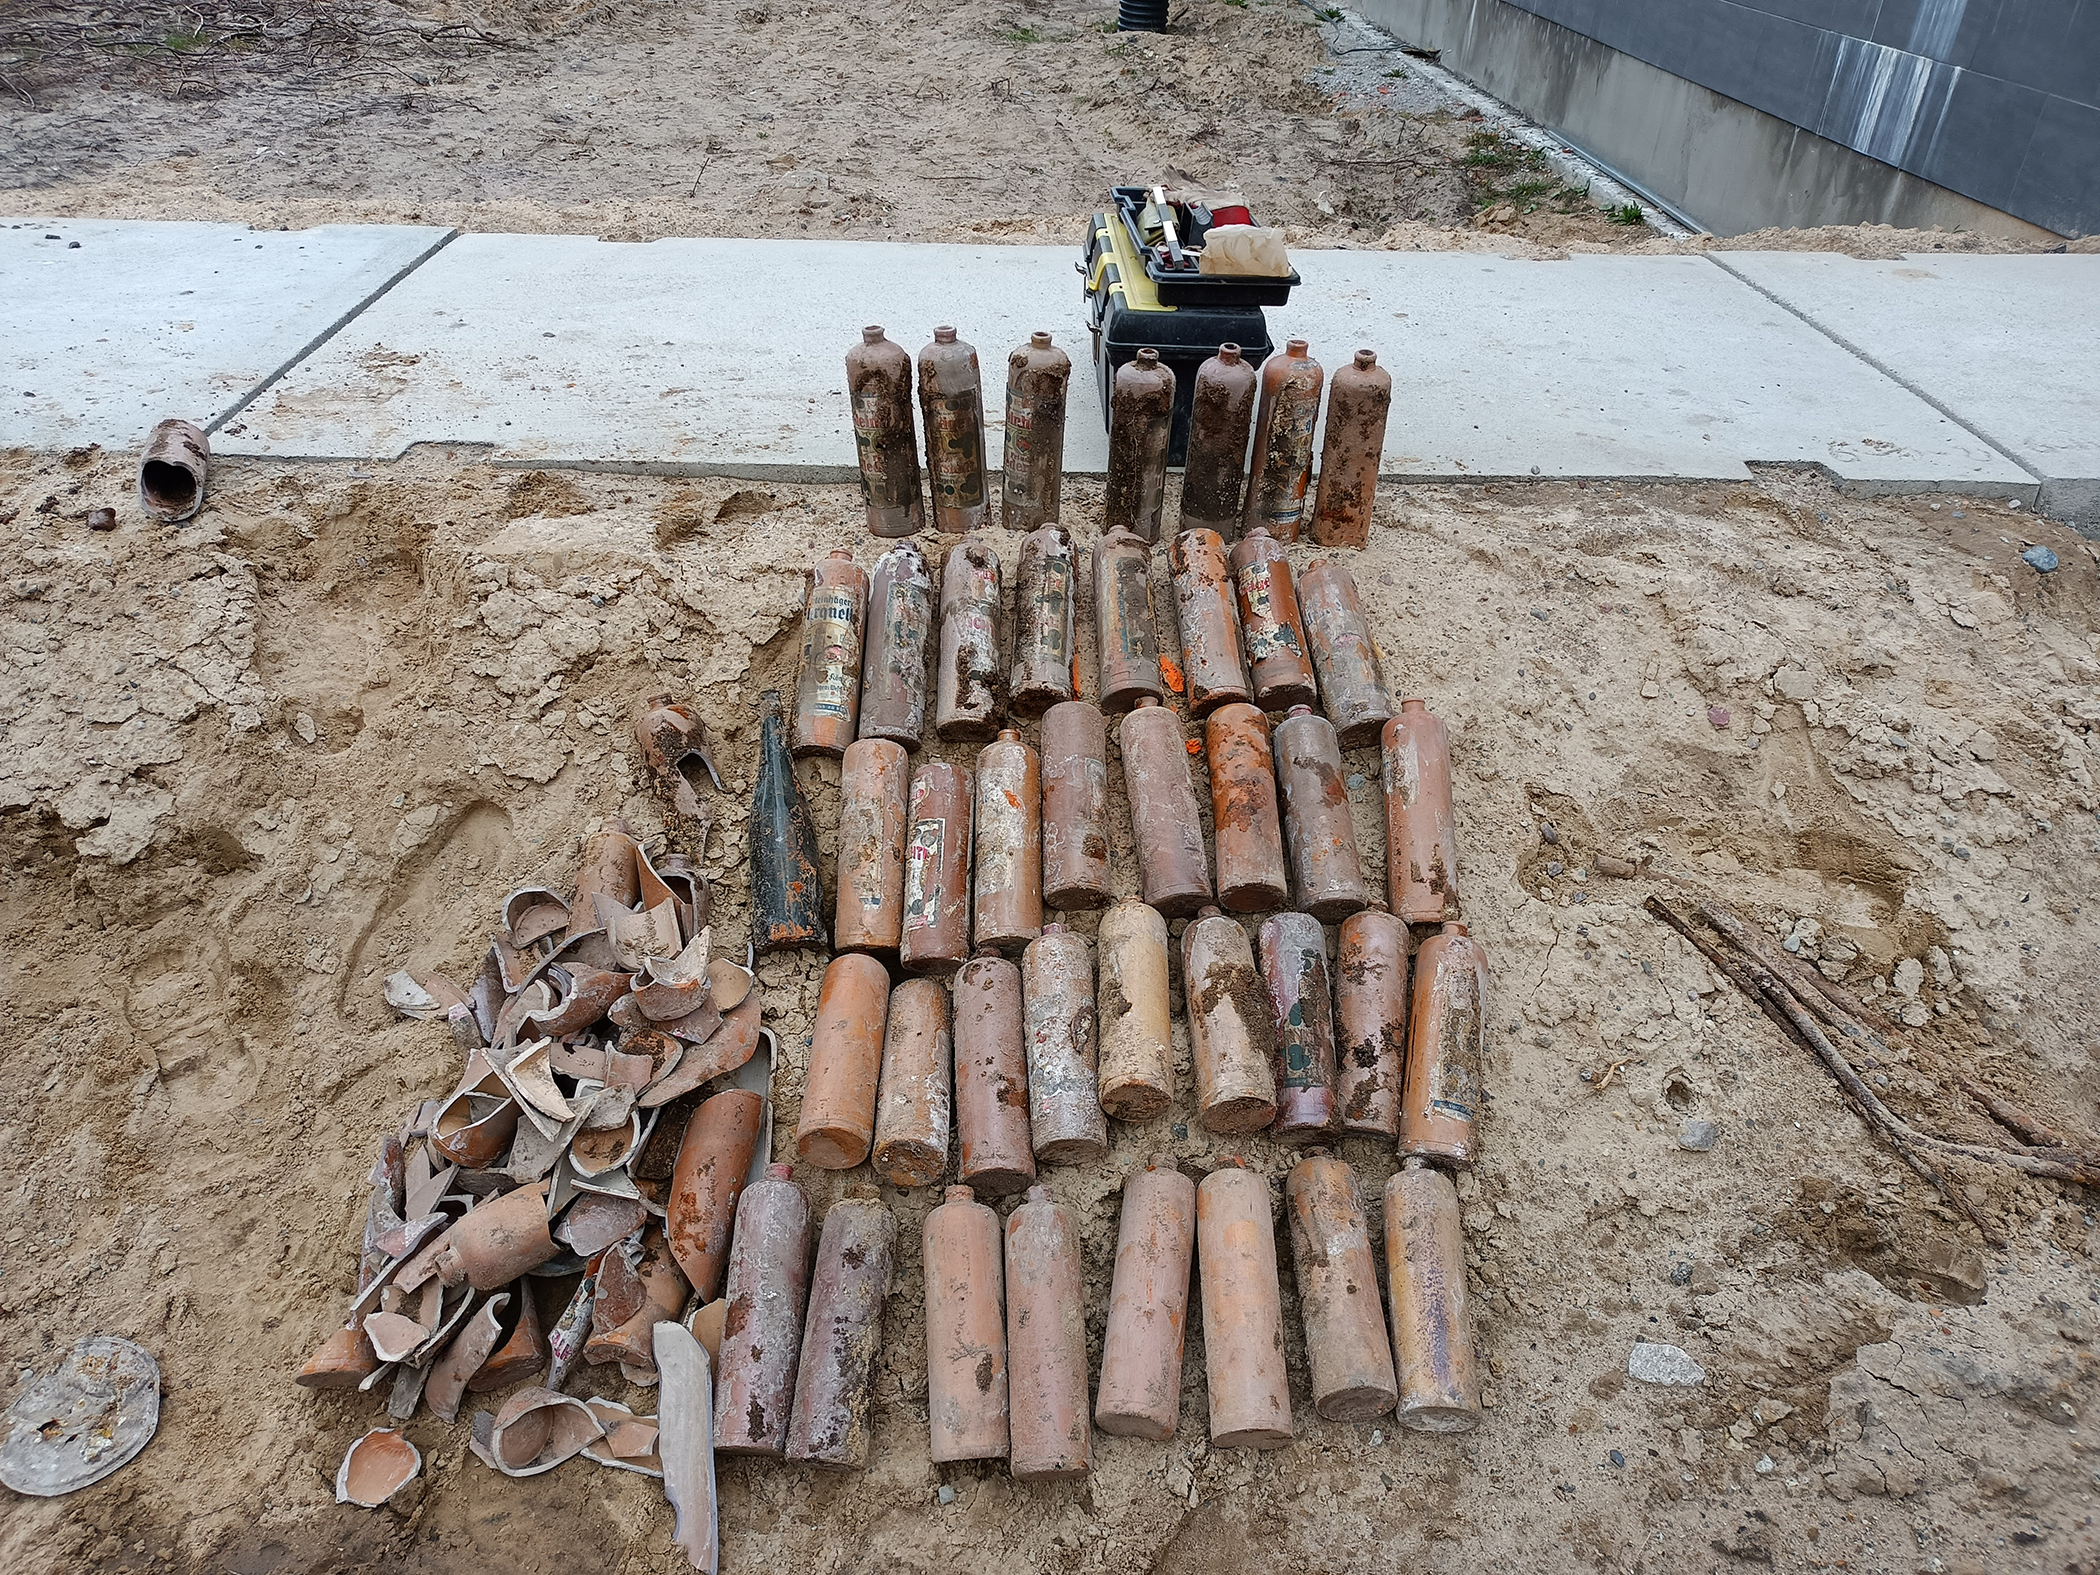 Kilka leżących butelek na piachu, obok  kilka fragmentów potłuczonych butelek. W oddali betonowe płyty ułożone w formie chodnika. 